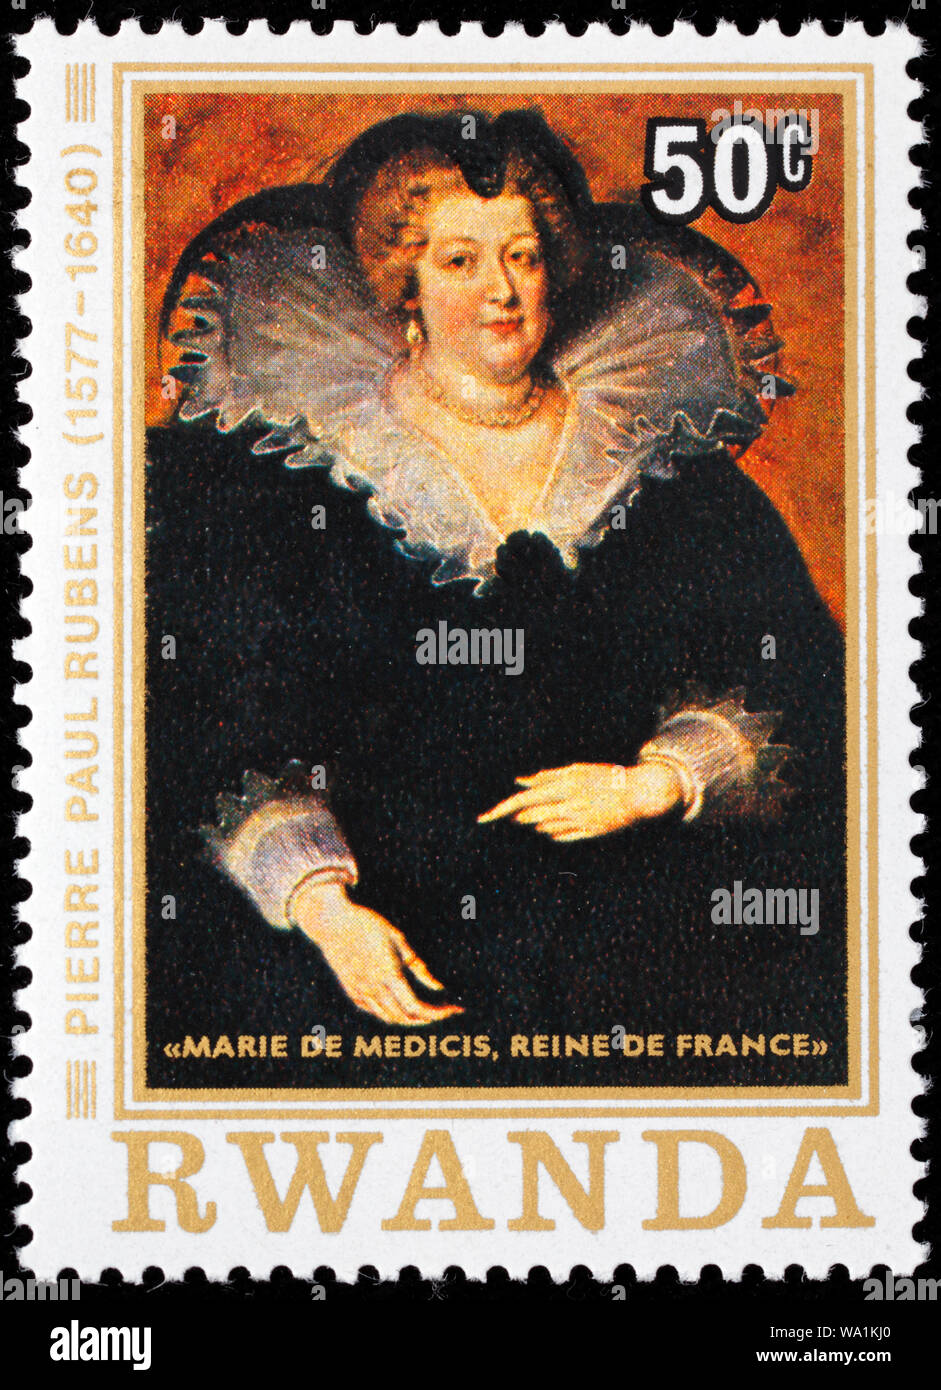 Marie de' Medici, Marie de Medicis (1575-1642), Queen of France, portrait by Peter Paul Rubens, postage stamp, Rwanda, 1977 Stock Photo